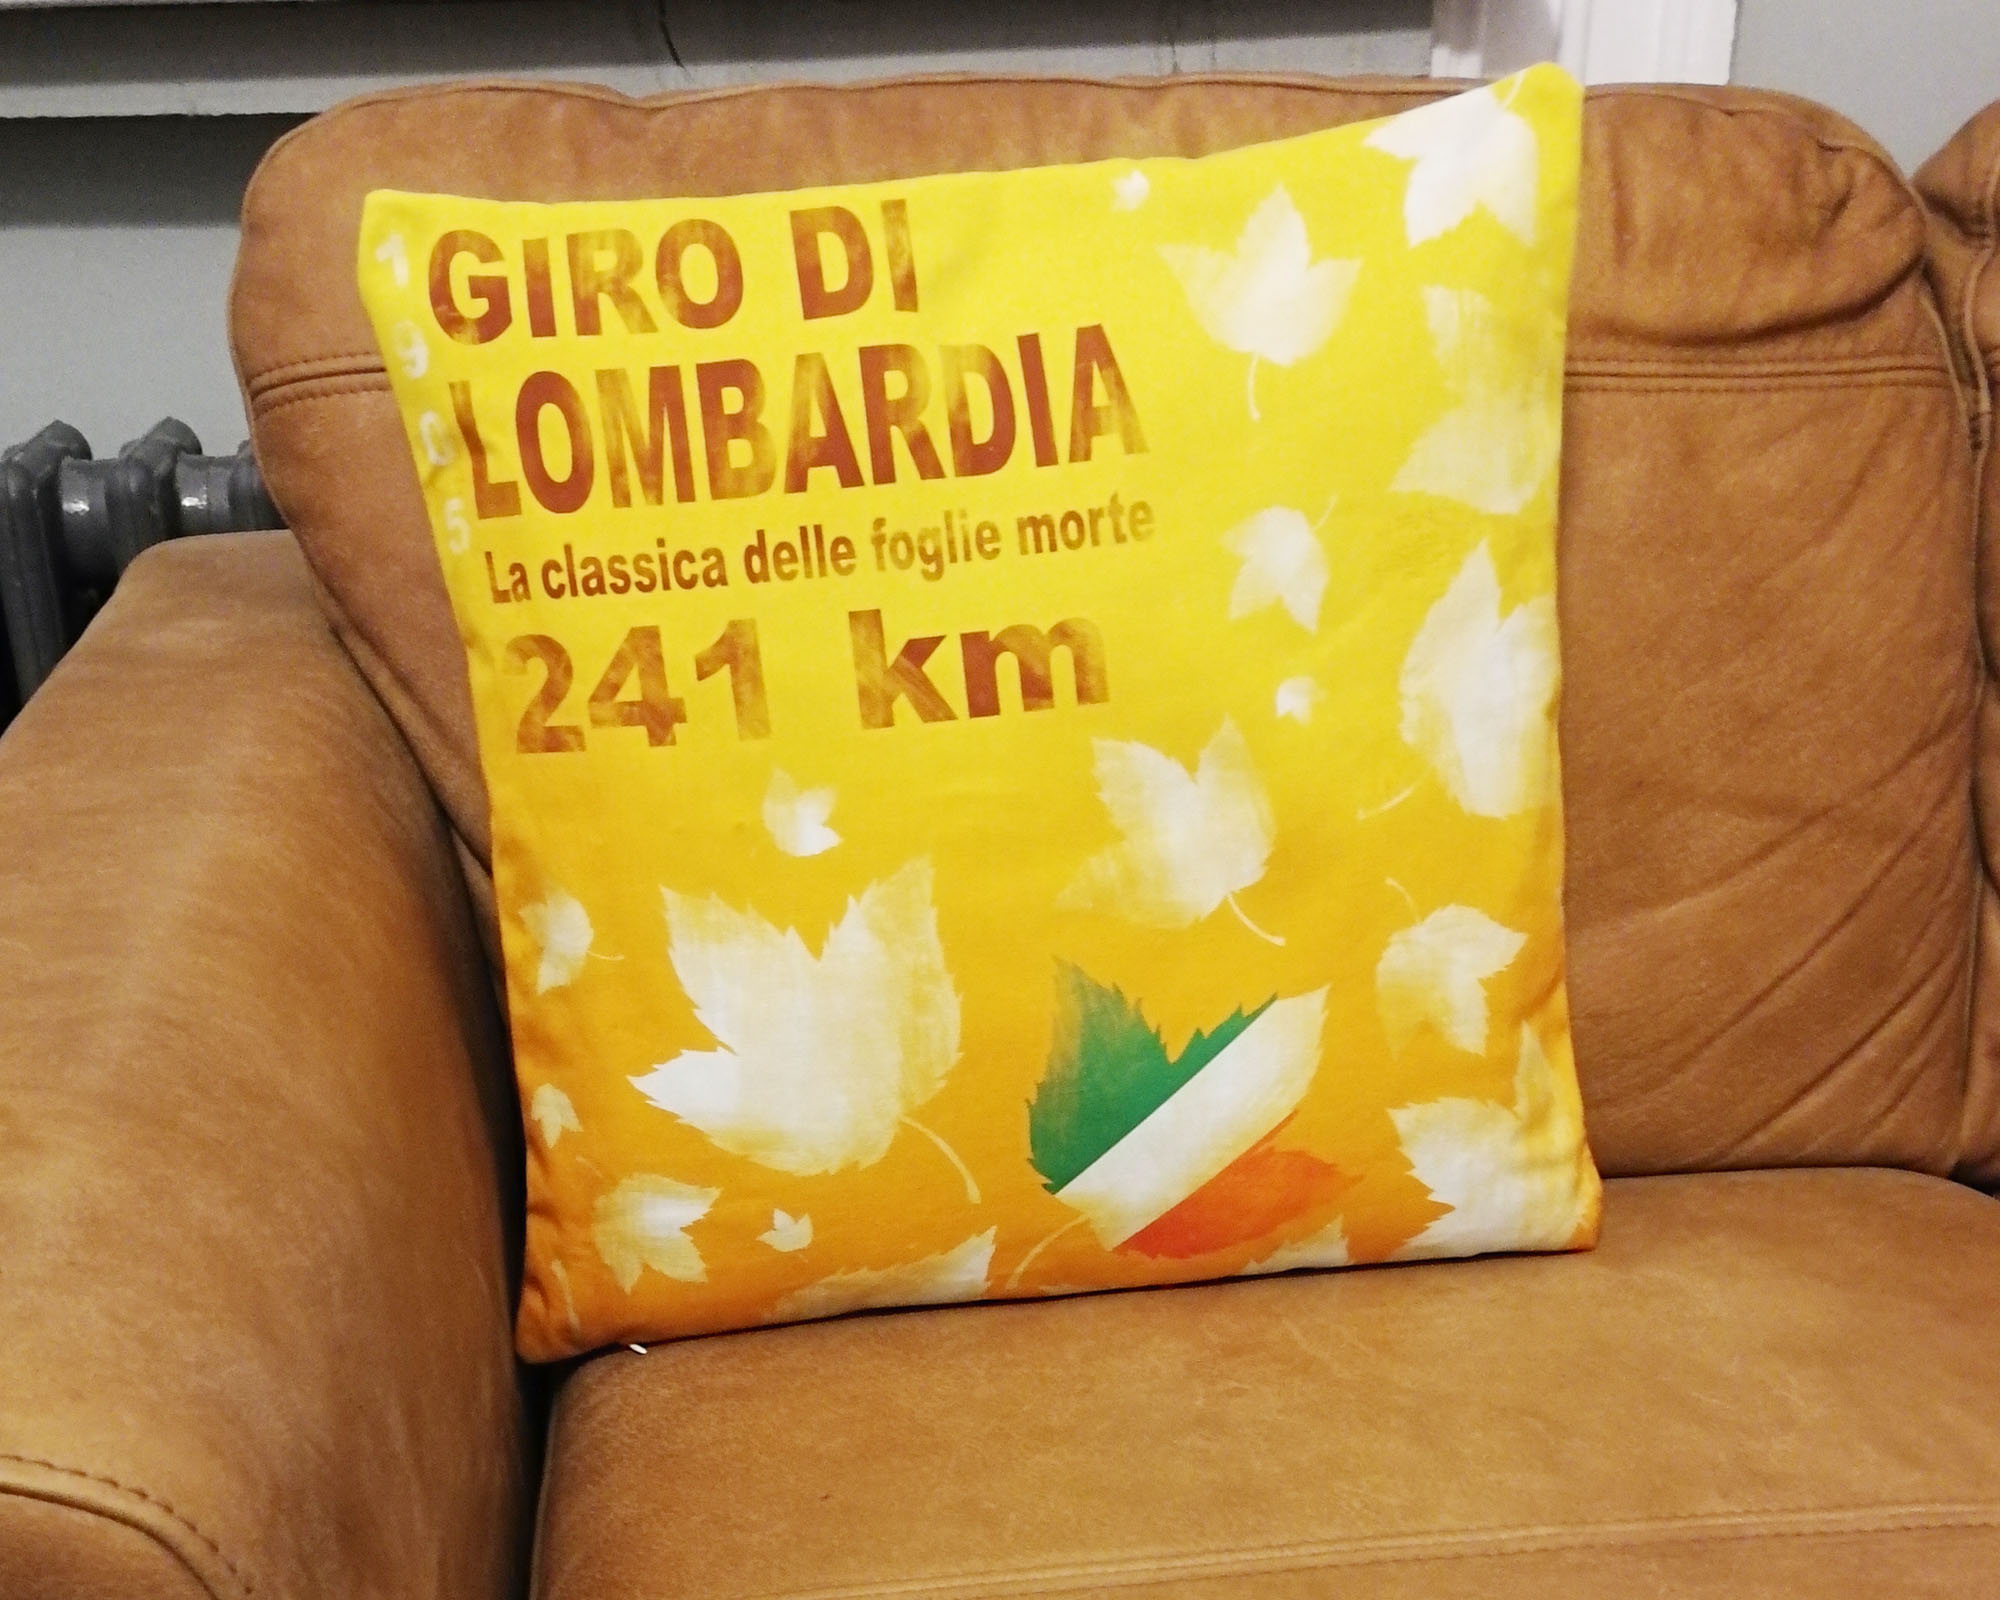 Giro di Lombardia Cushion Cover